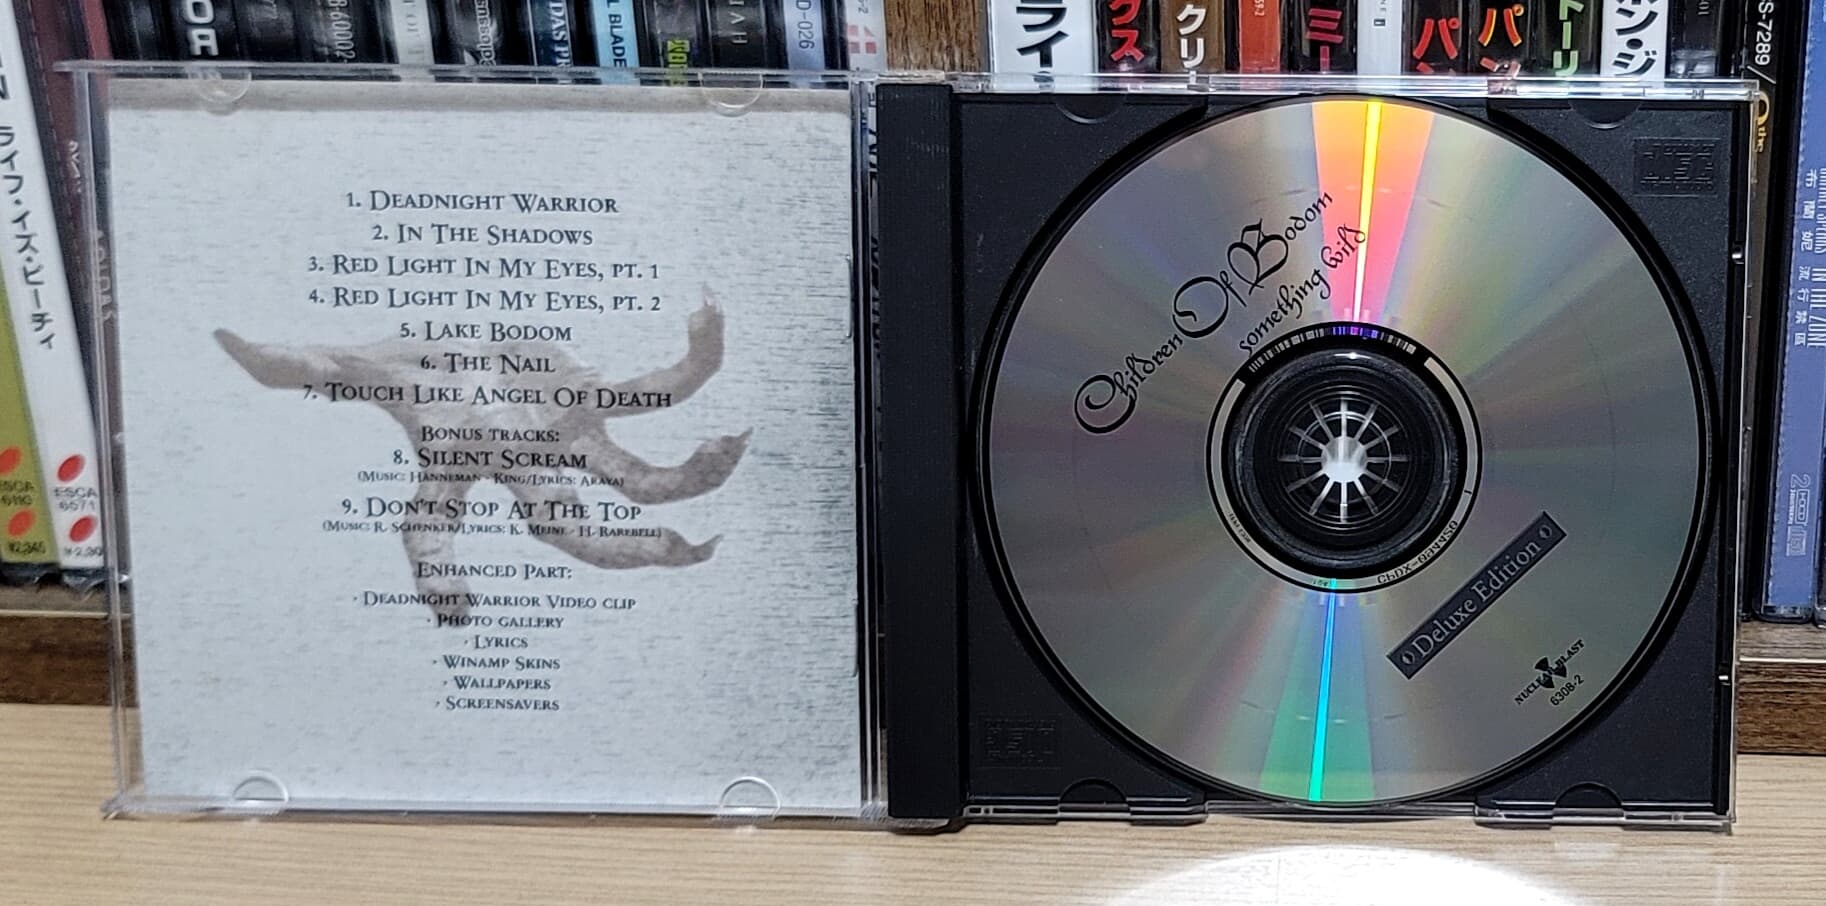 (미국반 Deluxe Edition) Children Of Bodom - Something Wild